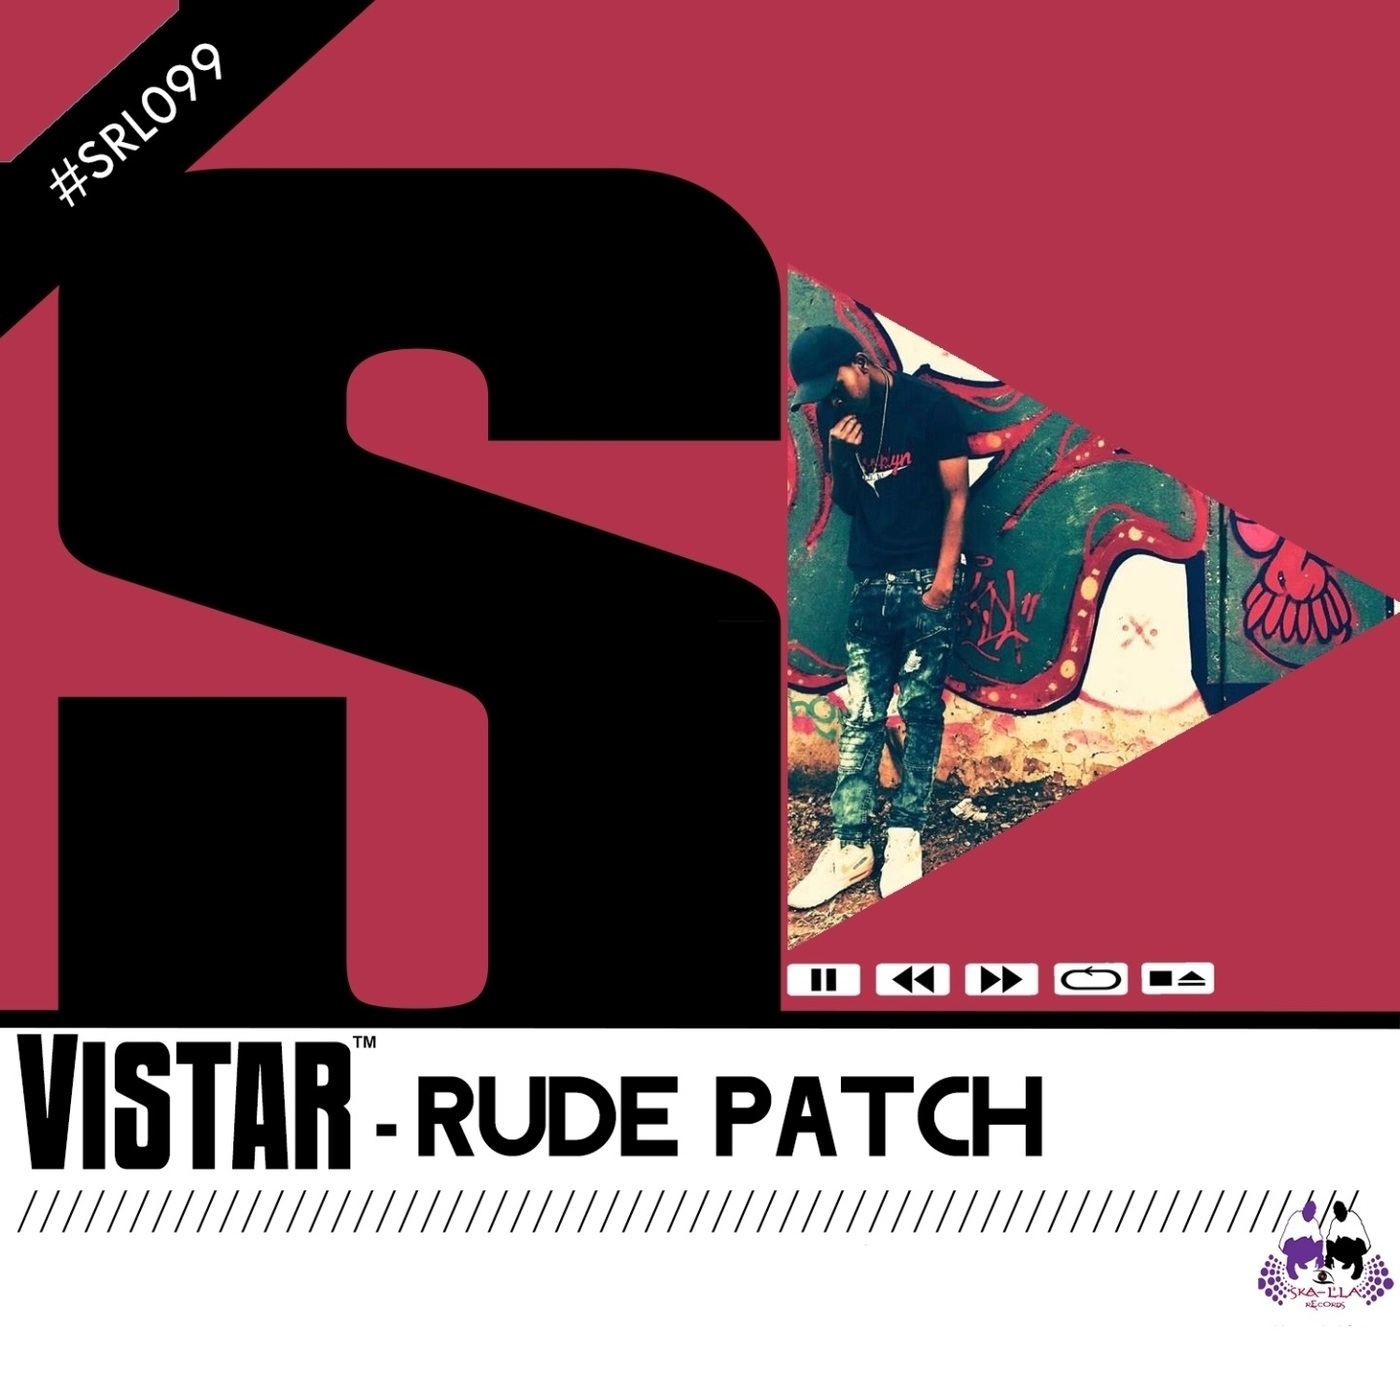 Vistar - Rude Patch / Skalla Records